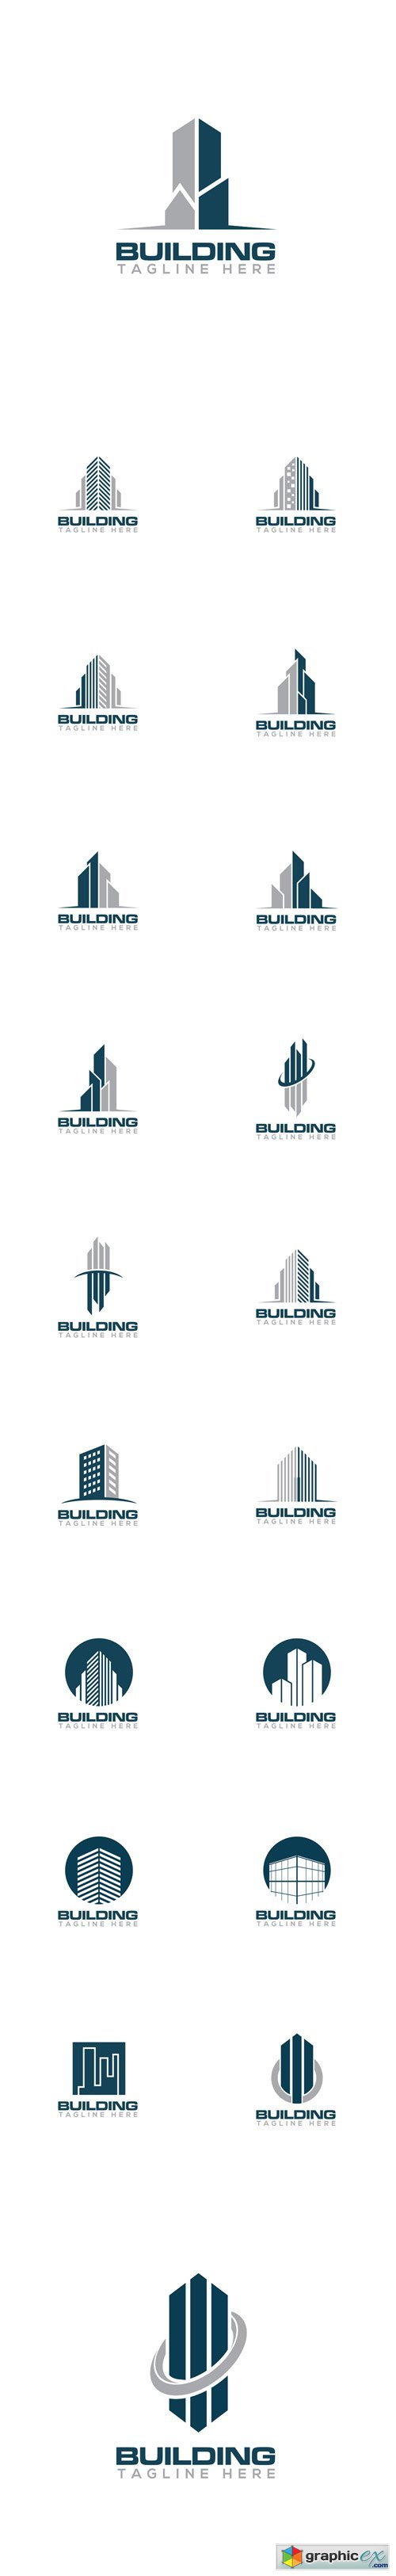 Building Creative Concept Logo Design